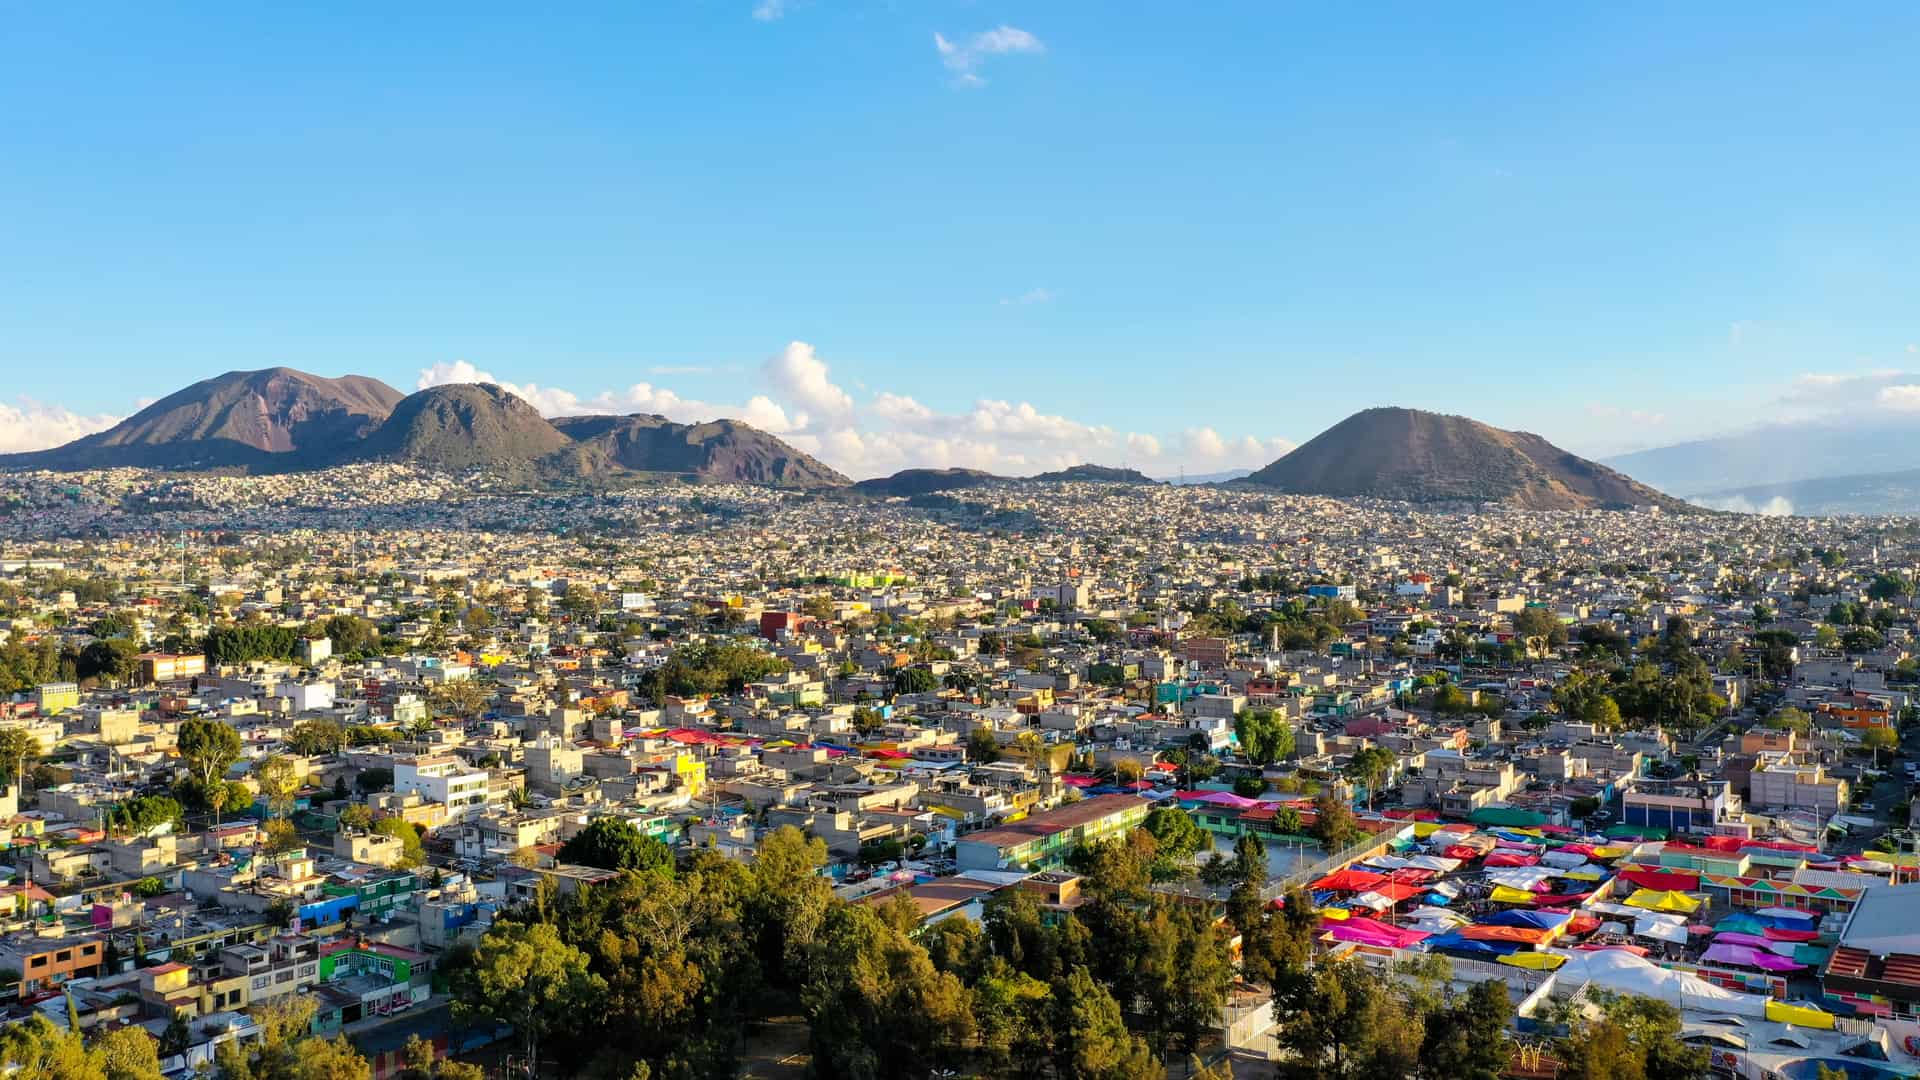 vista aerea de la ciudad de iztapalapa que representa las sucursales de movistar en esa localidad